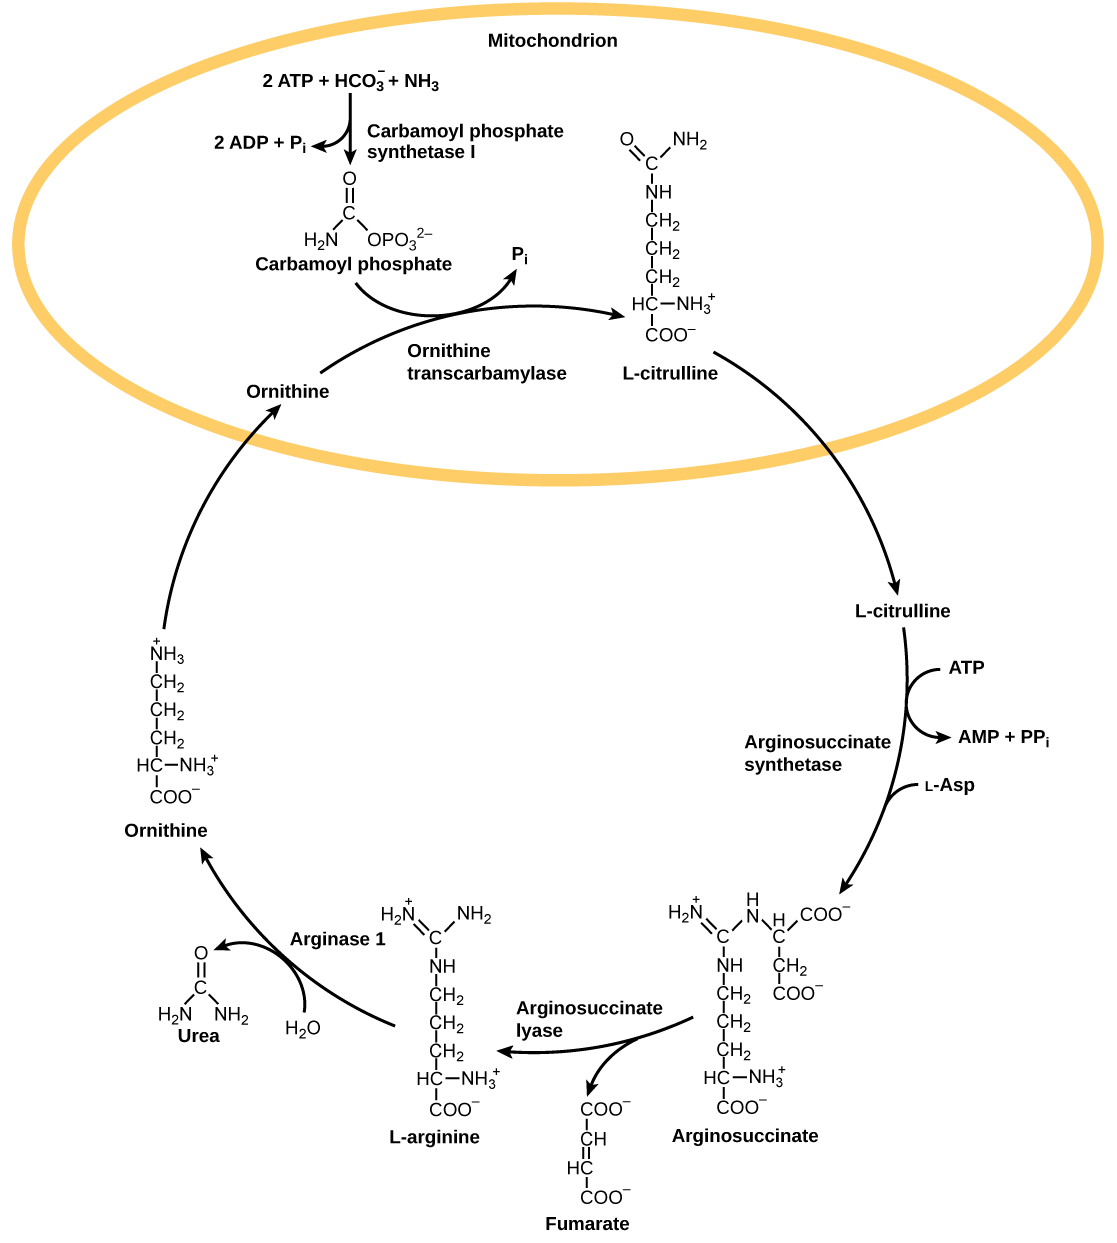 تبدأ دورة اليوريا في الميتوكوندريا، حيث يتم دمج البيكربونات (HCO3) مع الأمونيا (NH3) لصنع فوسفات الكاربامويل. يتم استخدام اثنين من ATP في هذه العملية. يضيف أورنيثين ترانسكارباميلاز فوسفات الكاربامويل إلى حمض أميني من خمسة كربون يسمى أورنيثين لصنع L-سيترولين. يترك إل-سيترولين الميتوكوندريا، ويضيف إنزيم يسمى أرجينوسكسينات سينثيتاس حمضًا أمينيًا رباعي الكربون يسمى L-aspartate إليه لصنع أرجينوسكسينات. في هذه العملية، يتم تحويل ATP واحد إلى AMP و PPI. يزيل اللياز الأرجينوسكسينات جزيء فومارات رباعي الكربون من الأرجينوسكسينات، مكونًا الحمض الأميني سداسي الكربون إل-أرجينين. يزيل Arginase-1 جزيء اليوريا من إل-أرجينين، ويشكل الأورنيثين في هذه العملية. تحتوي اليوريا على كربون واحد مزدوج الارتباط بالأكسجين وواحد مرتبط بمجموعتين من الأمونيا. يدخل الأورنيثين الميتوكوندريا ليكمل الدورة.